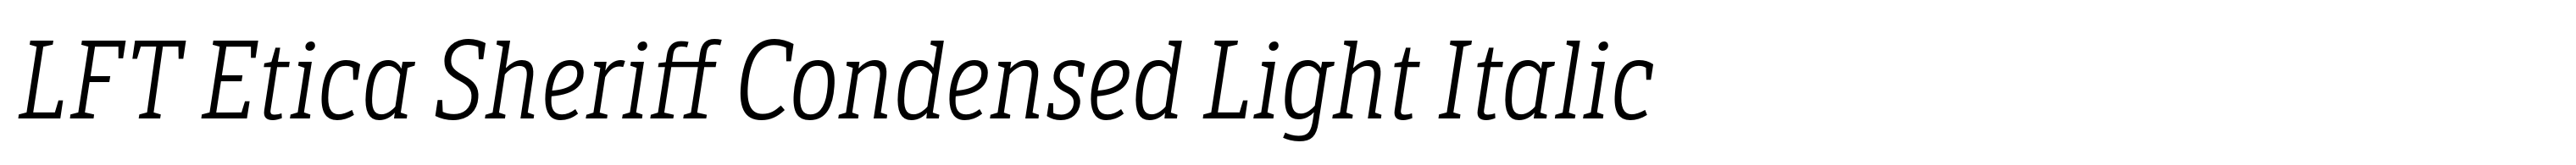 LFT Etica Sheriff Condensed Light Italic